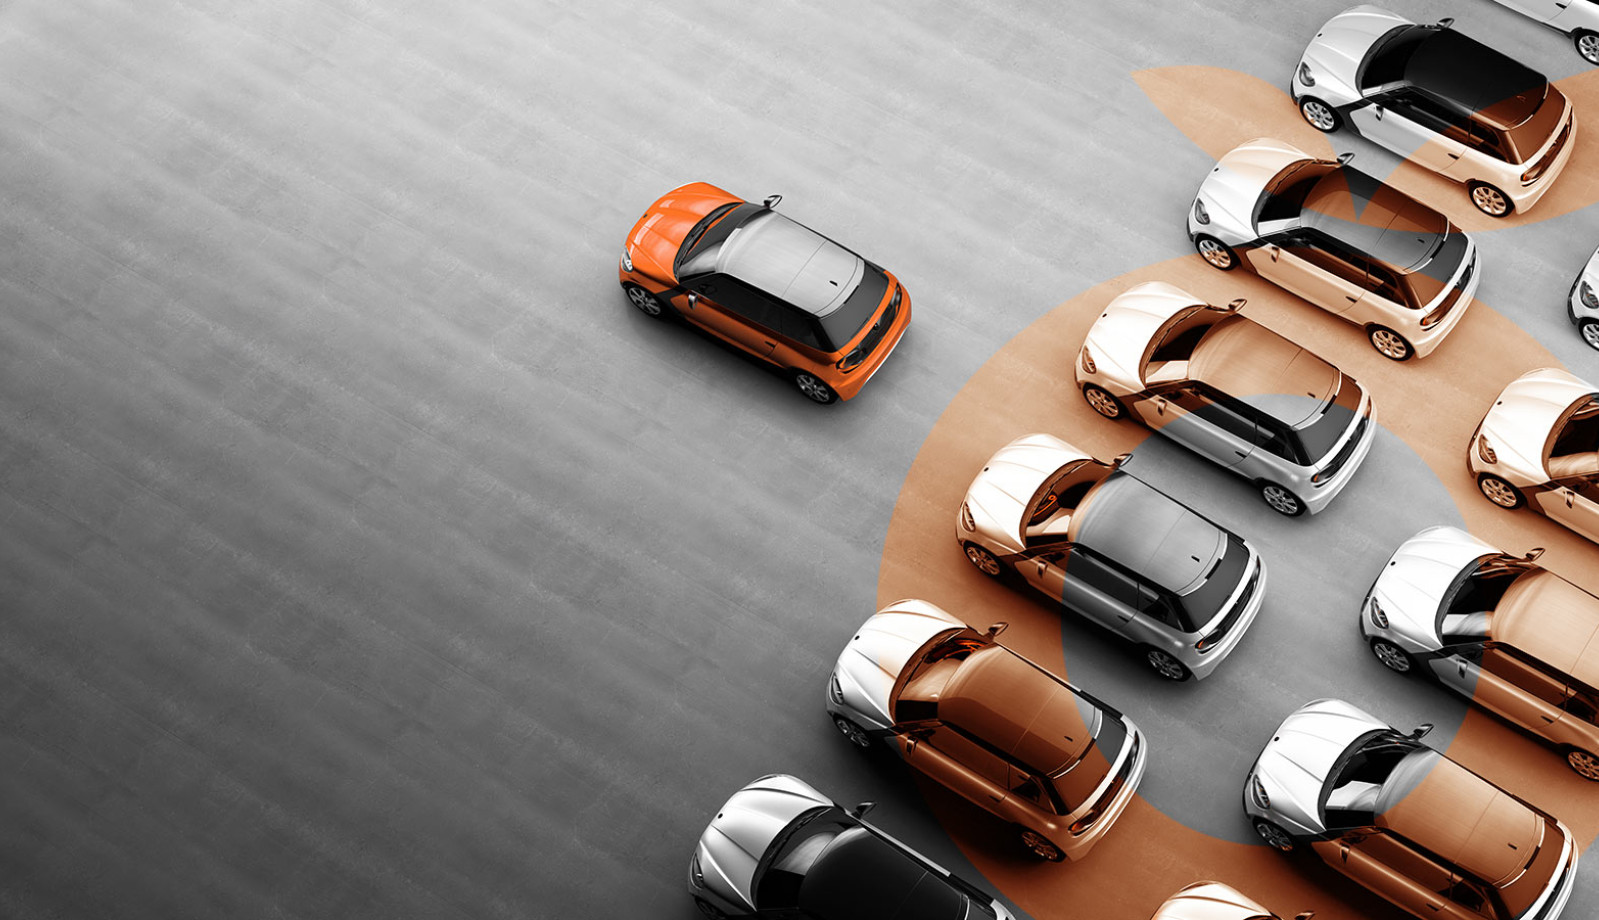 ALD Automotive: Ein weltweit führender Anbieter von Mobilitätslösungen setzt auf die tts performance suite